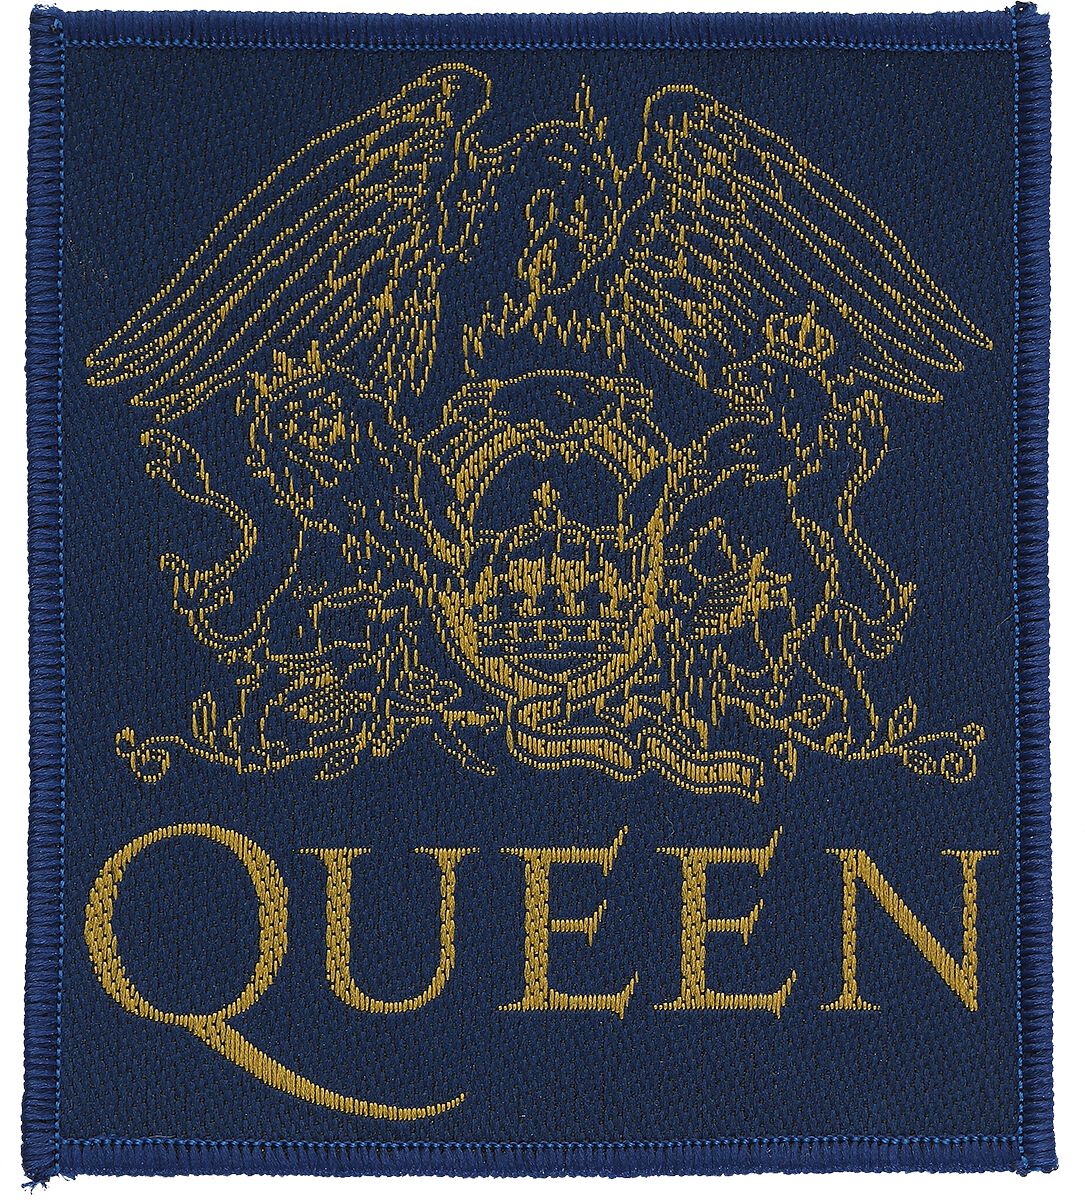 Queen Crest Patch schwarz gelb von Queen